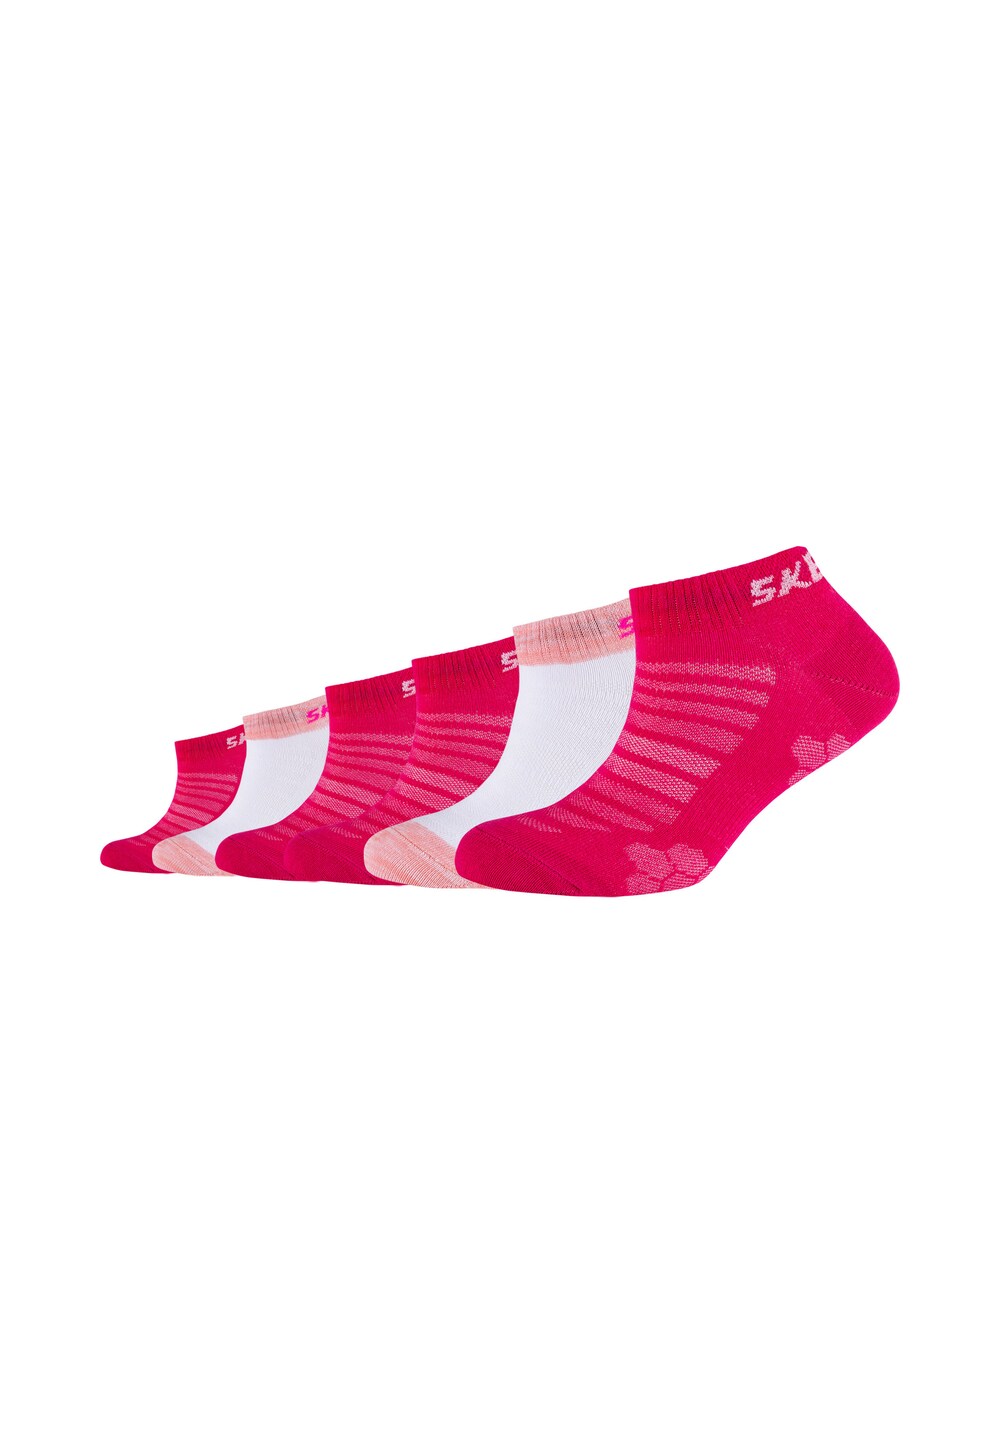 Носки Skechers, розовый/розовый/белый